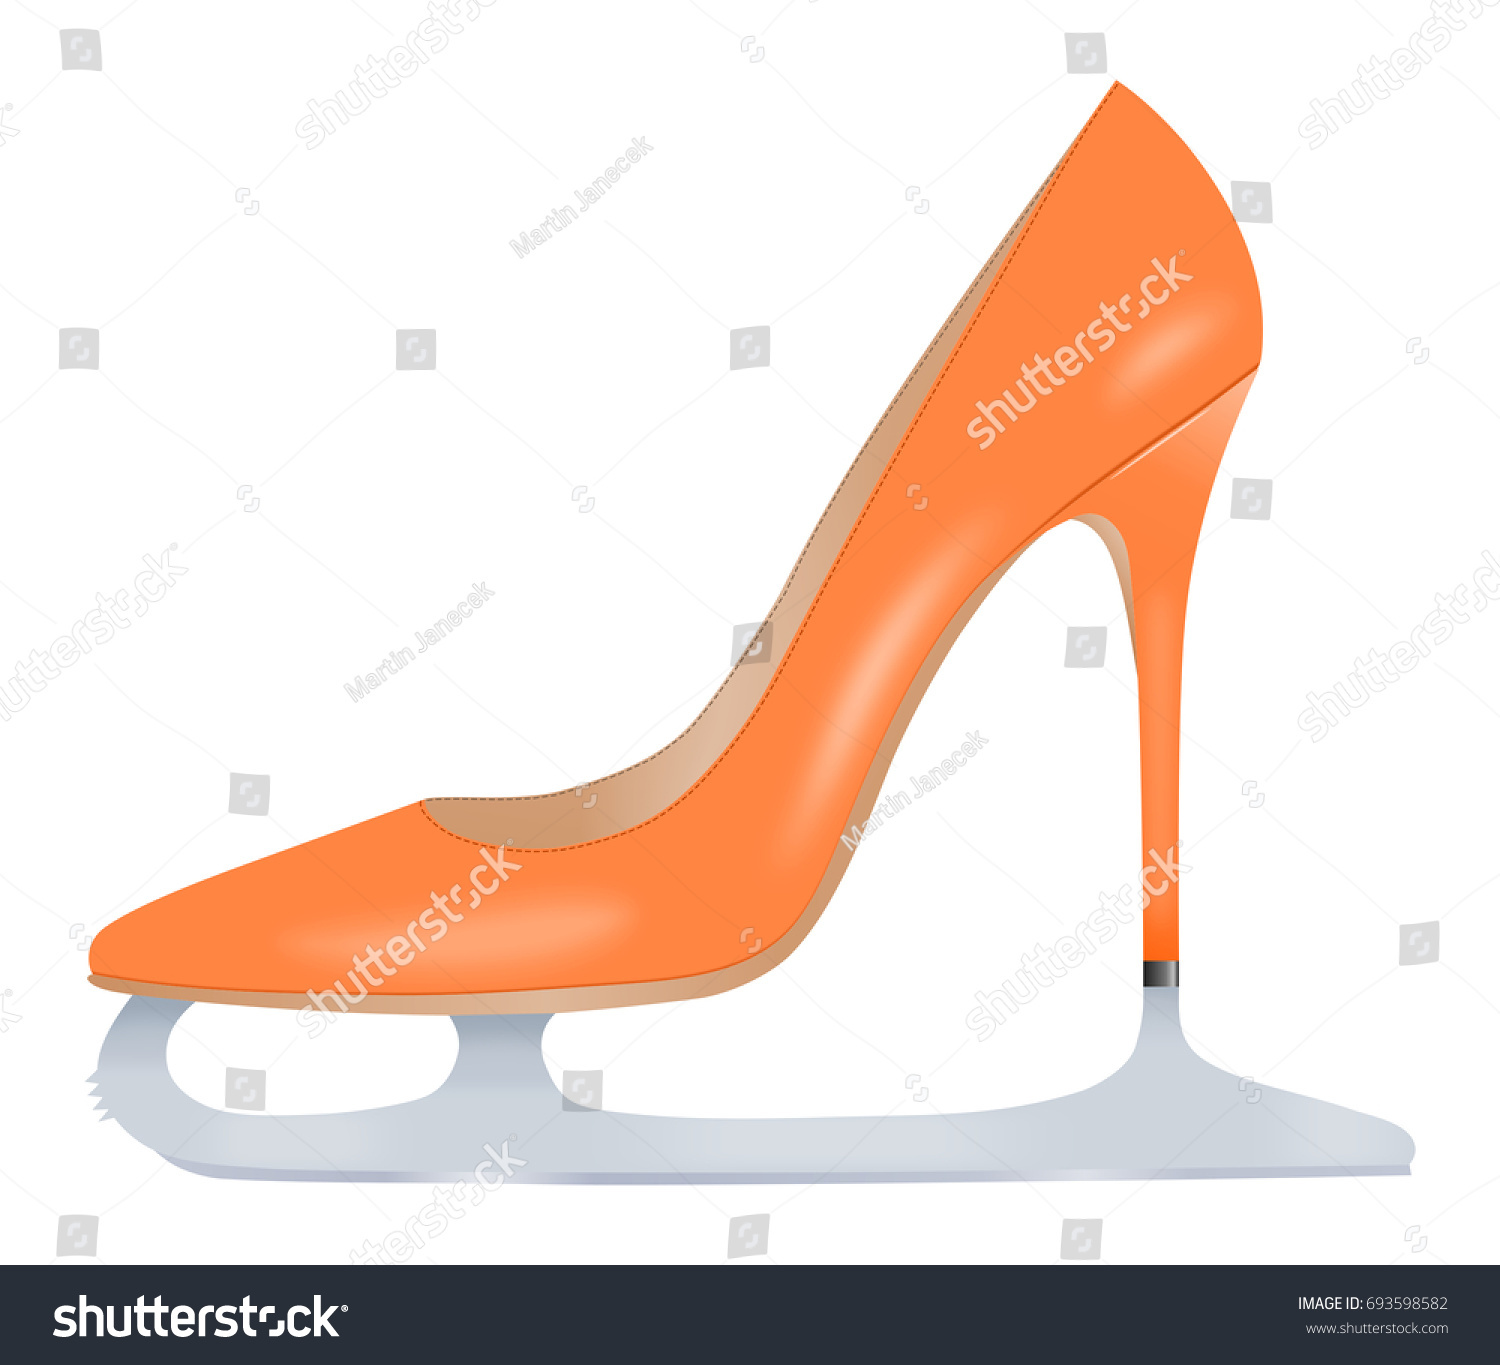 orange high heels women's shoes